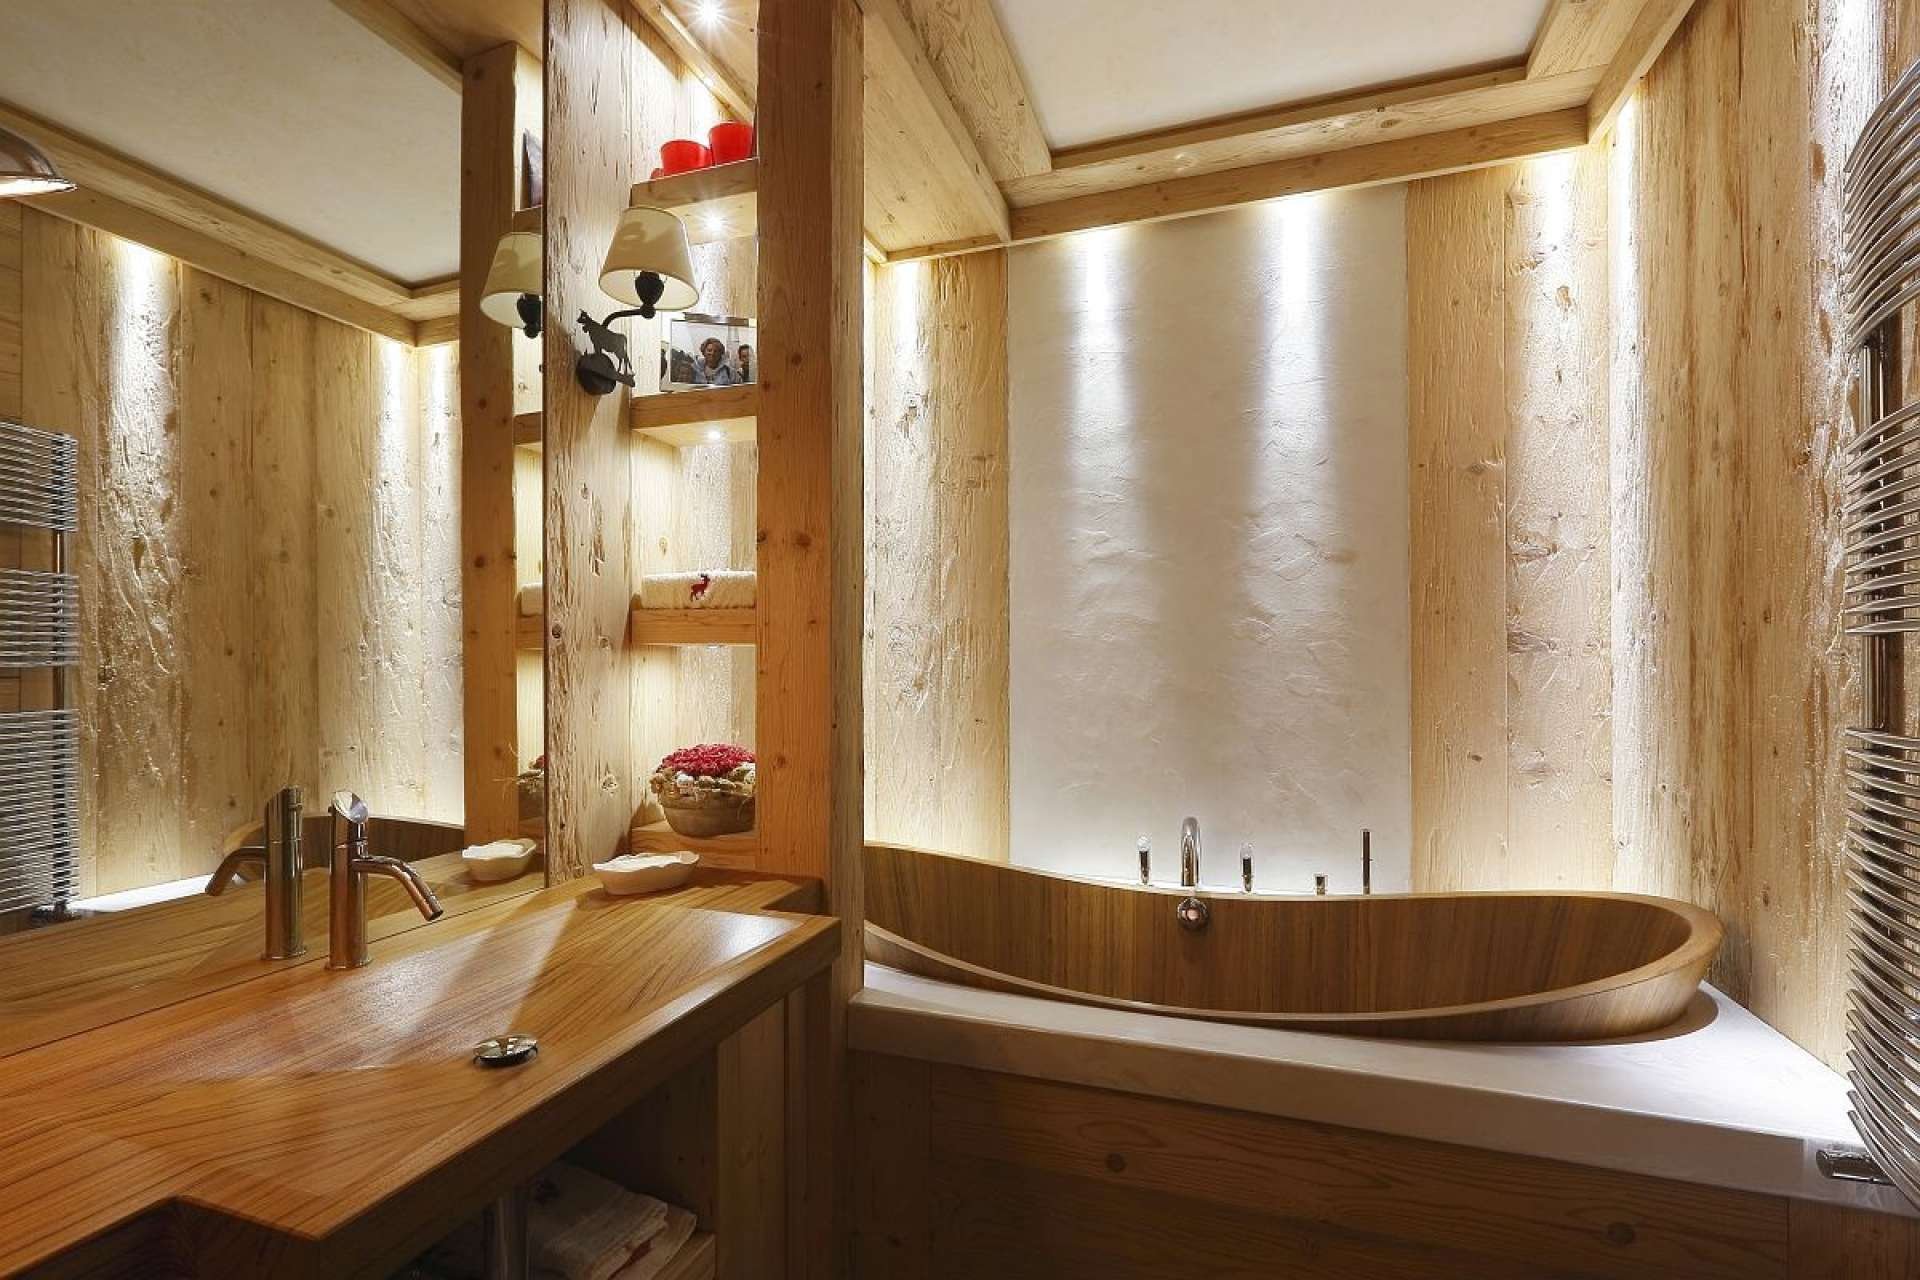 Отделка комнаты деревом. Деревянная ванная комната. Дерево в интерьере ванной комнаты. Ванная с деревянной отделкой. Ванная отделанная деревом.